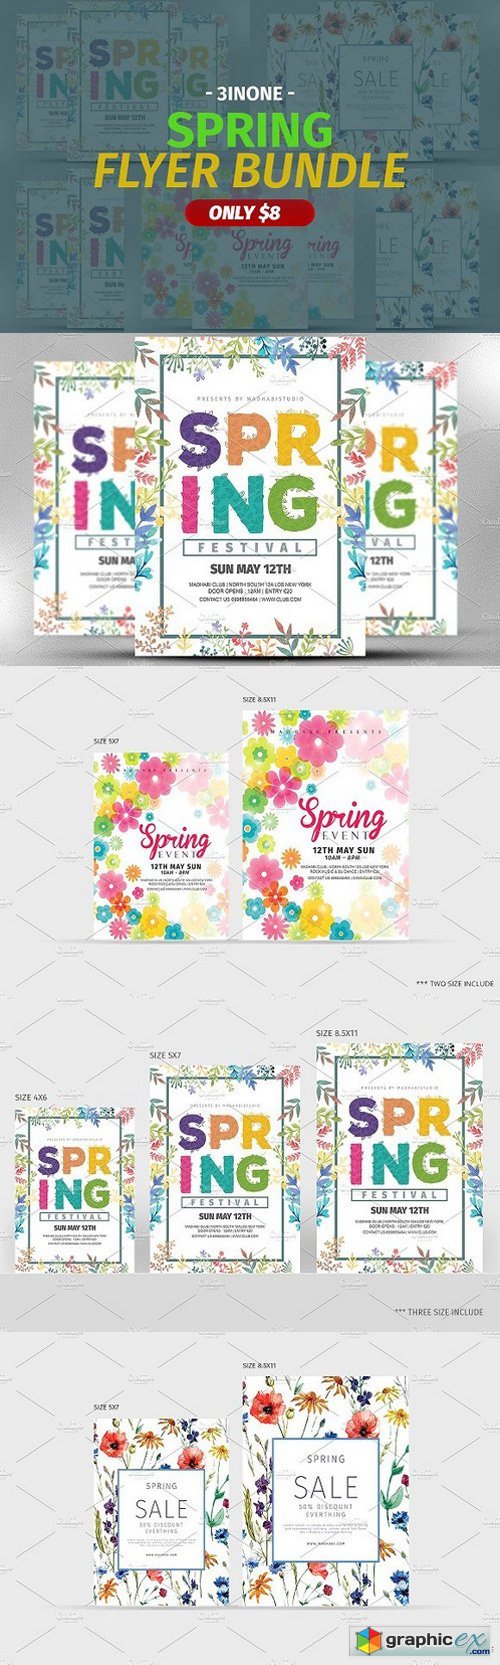 Spring Flyer Bundle 1303641